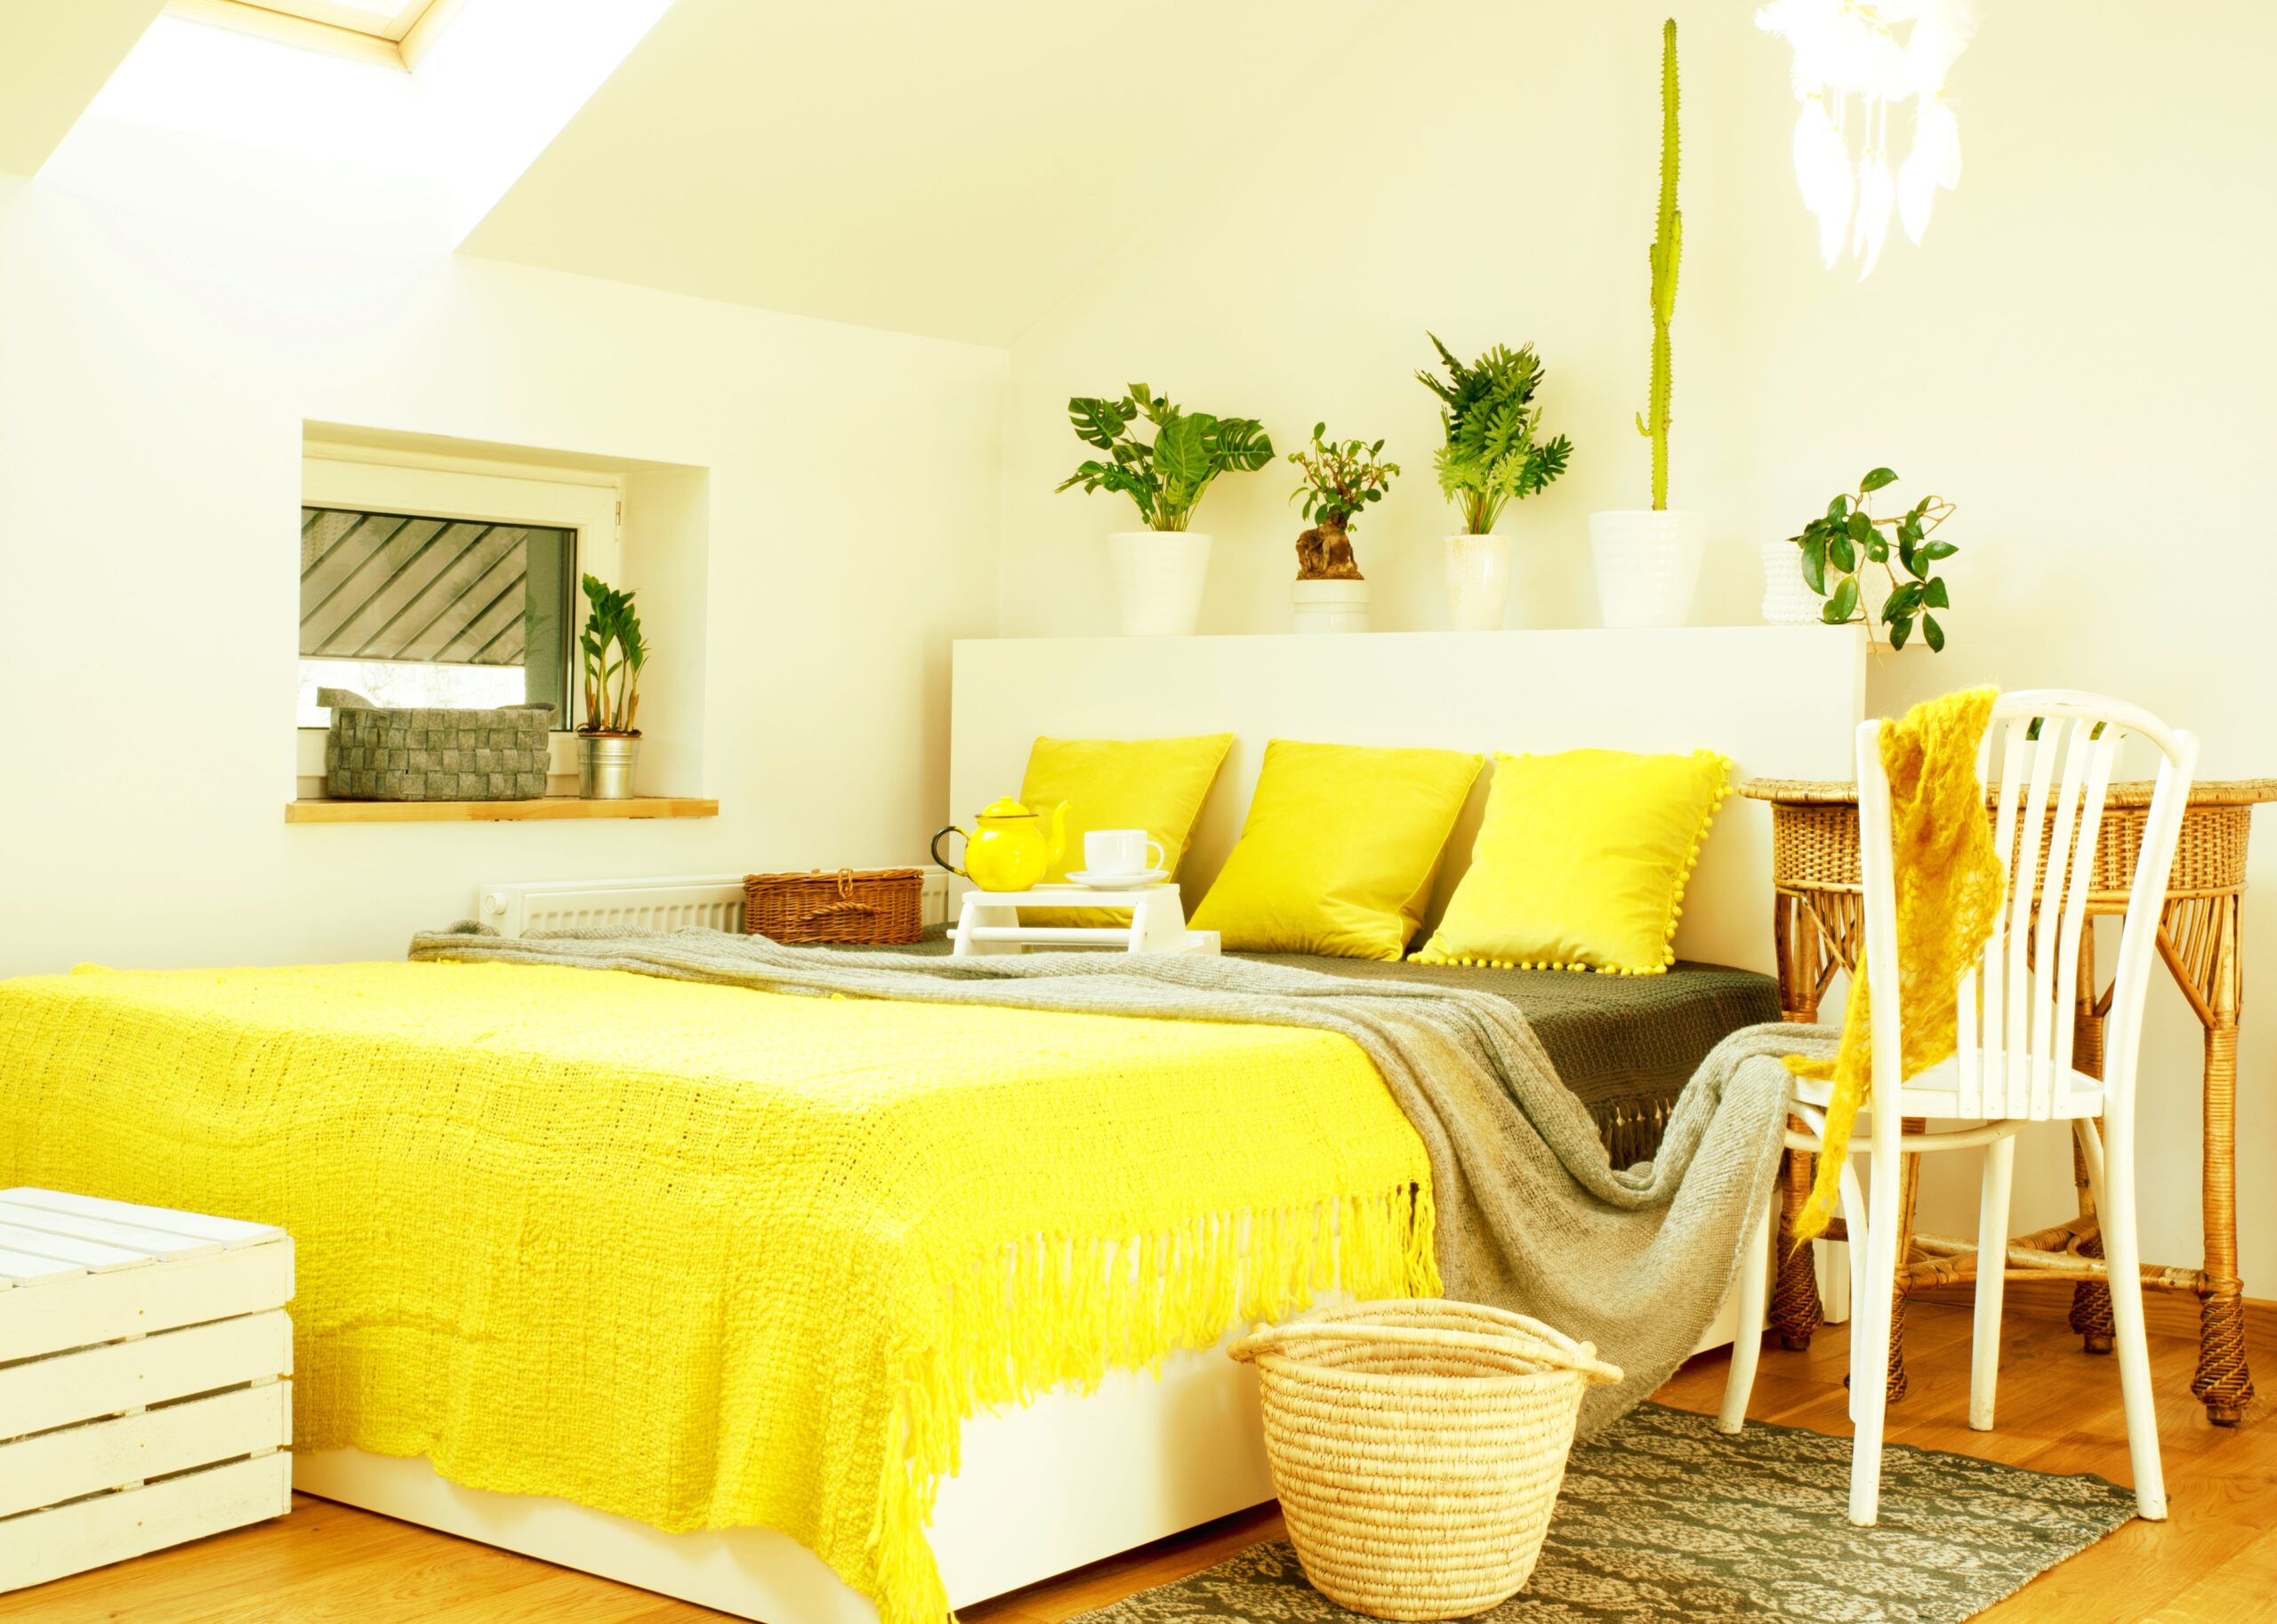 <img src="yellow.jpg" alt="yellow bedroom with throw blanket"/>